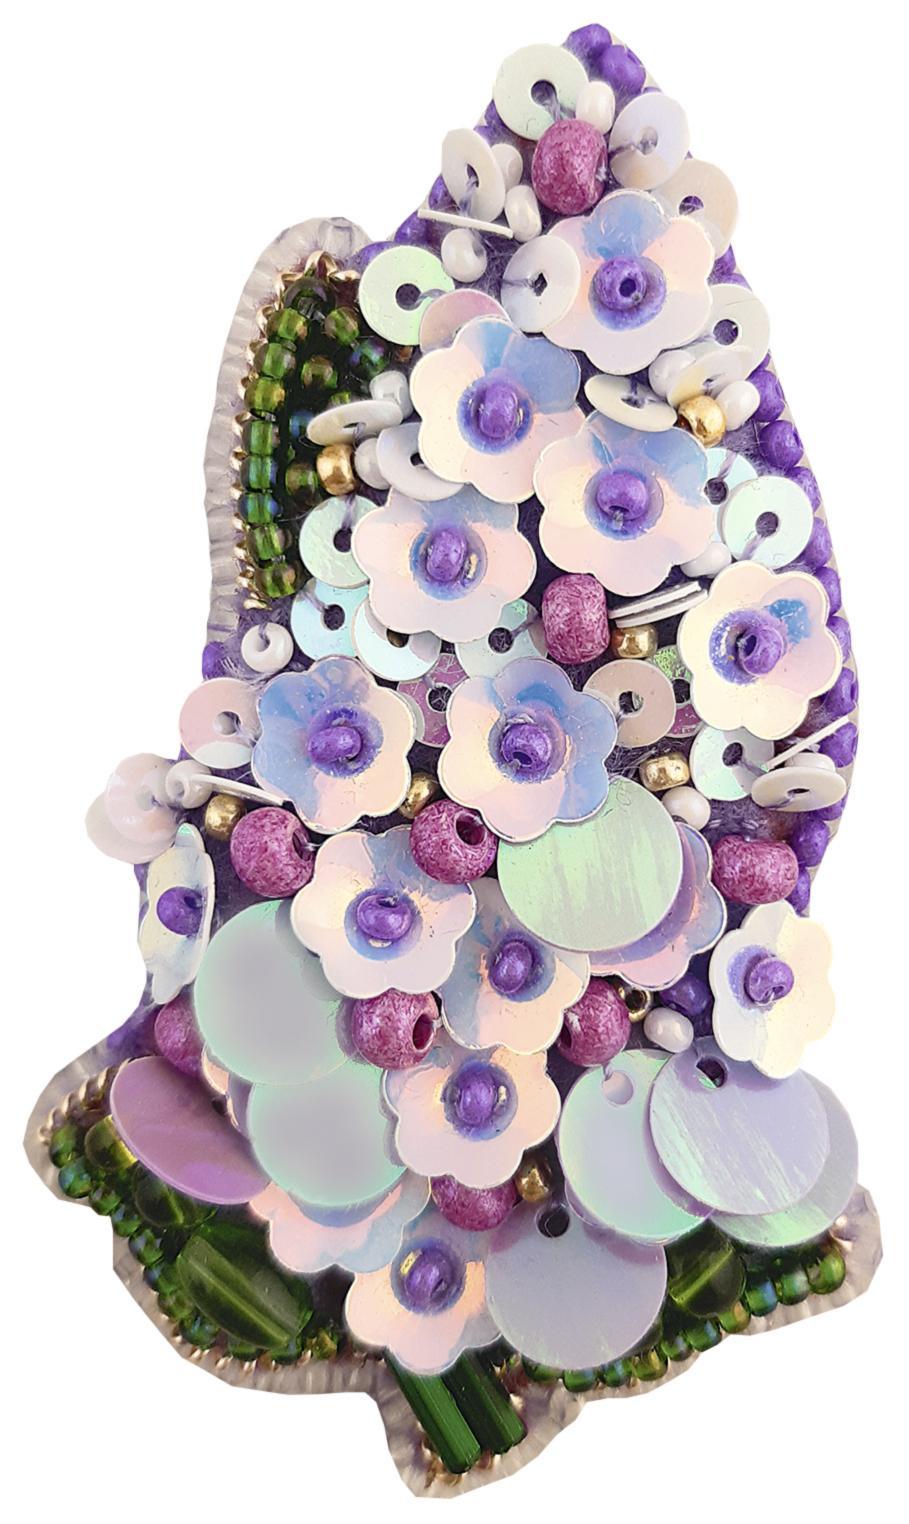 BP-276 Beadwork Kit de bordado para crear broches Crystal Art "Lilac" Momentos Magicos